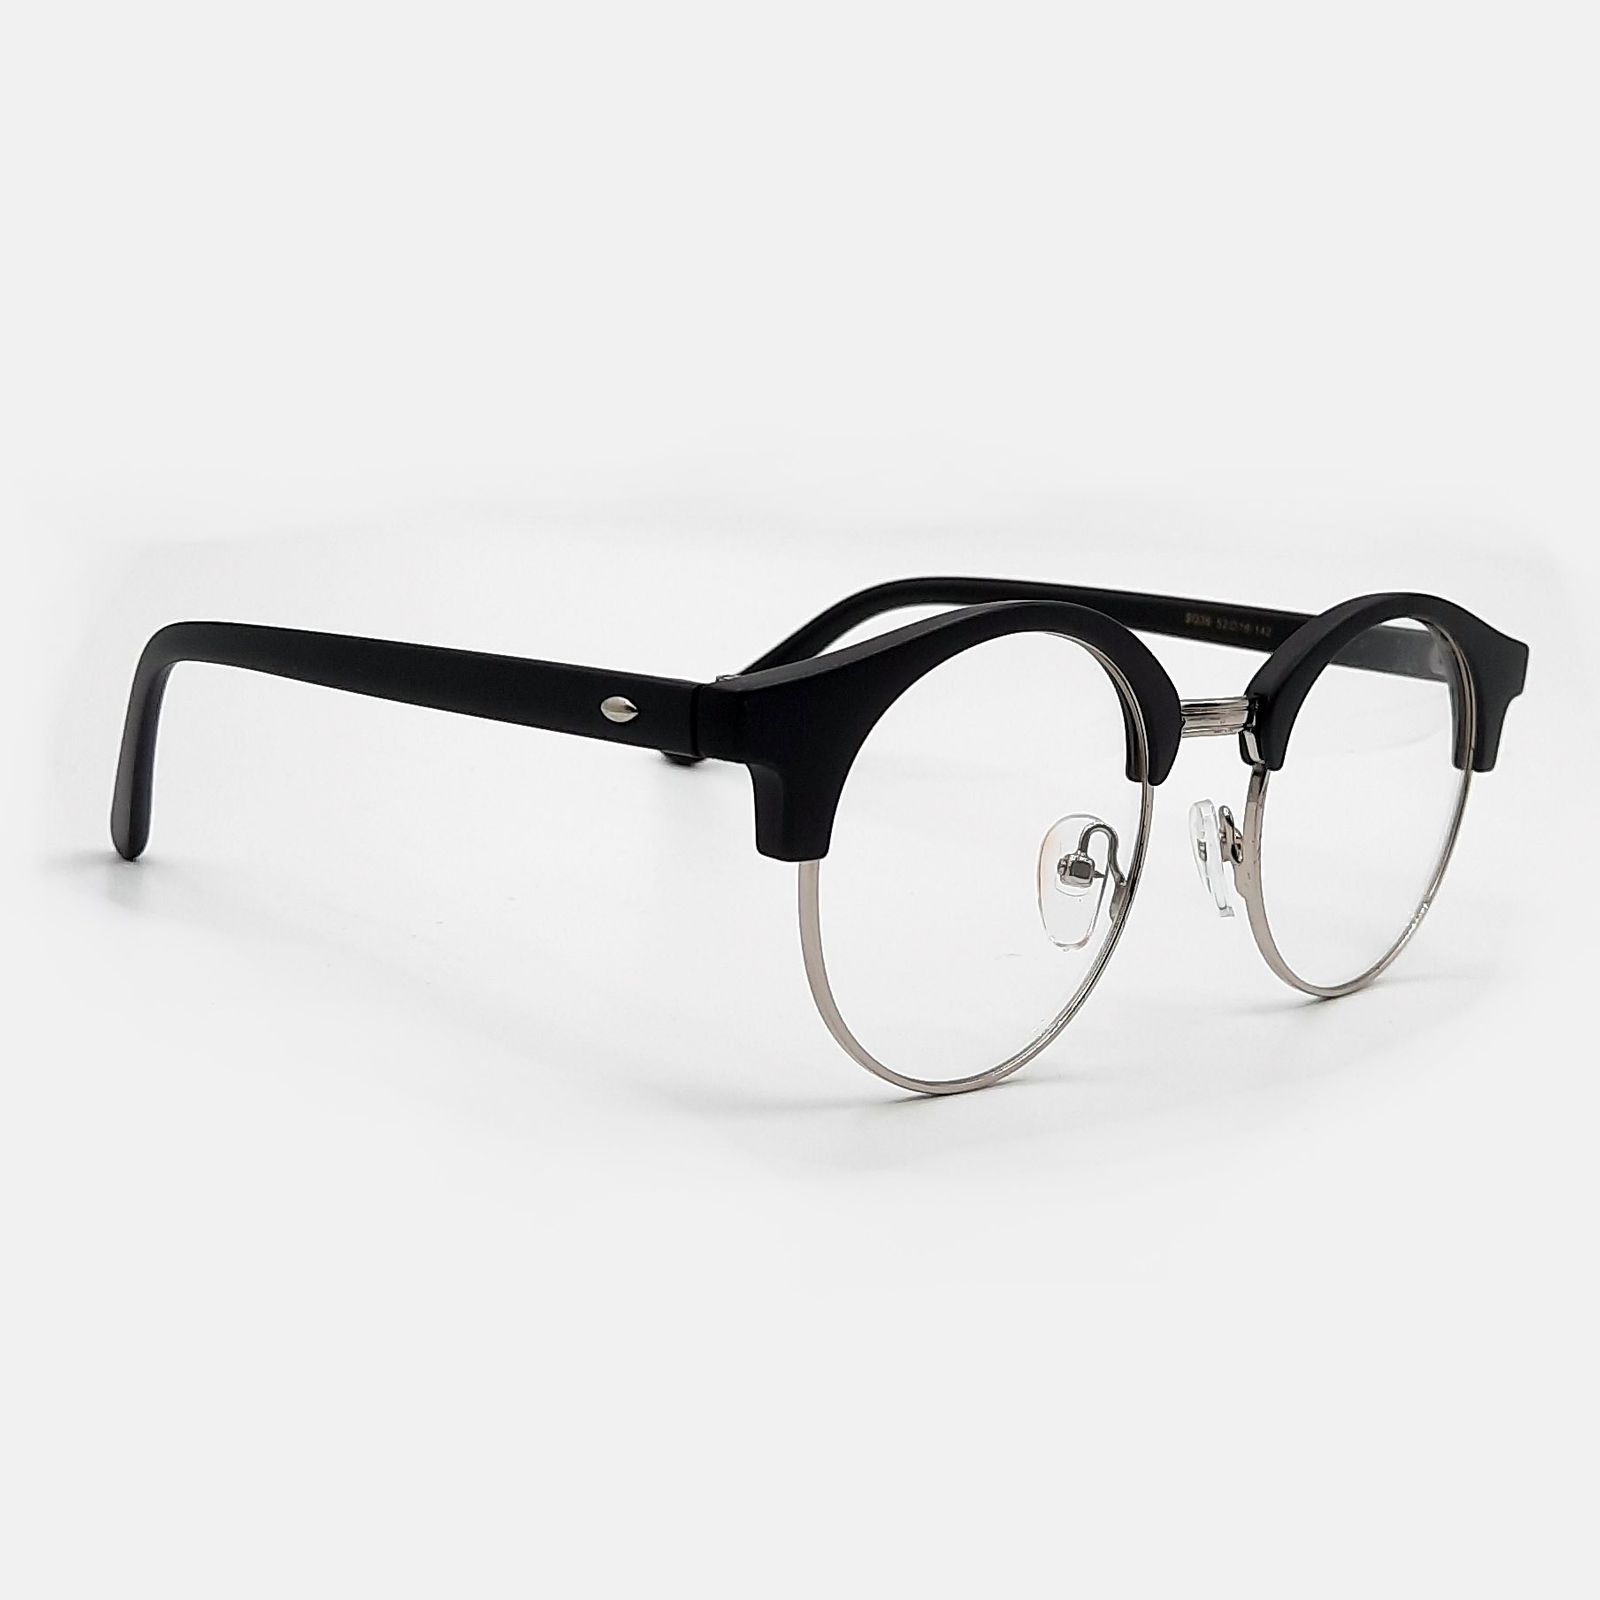  فریم عینک طبی مدل SQ36 به همراه کاور آفتابی مجموعه 6 عددی -  - 11